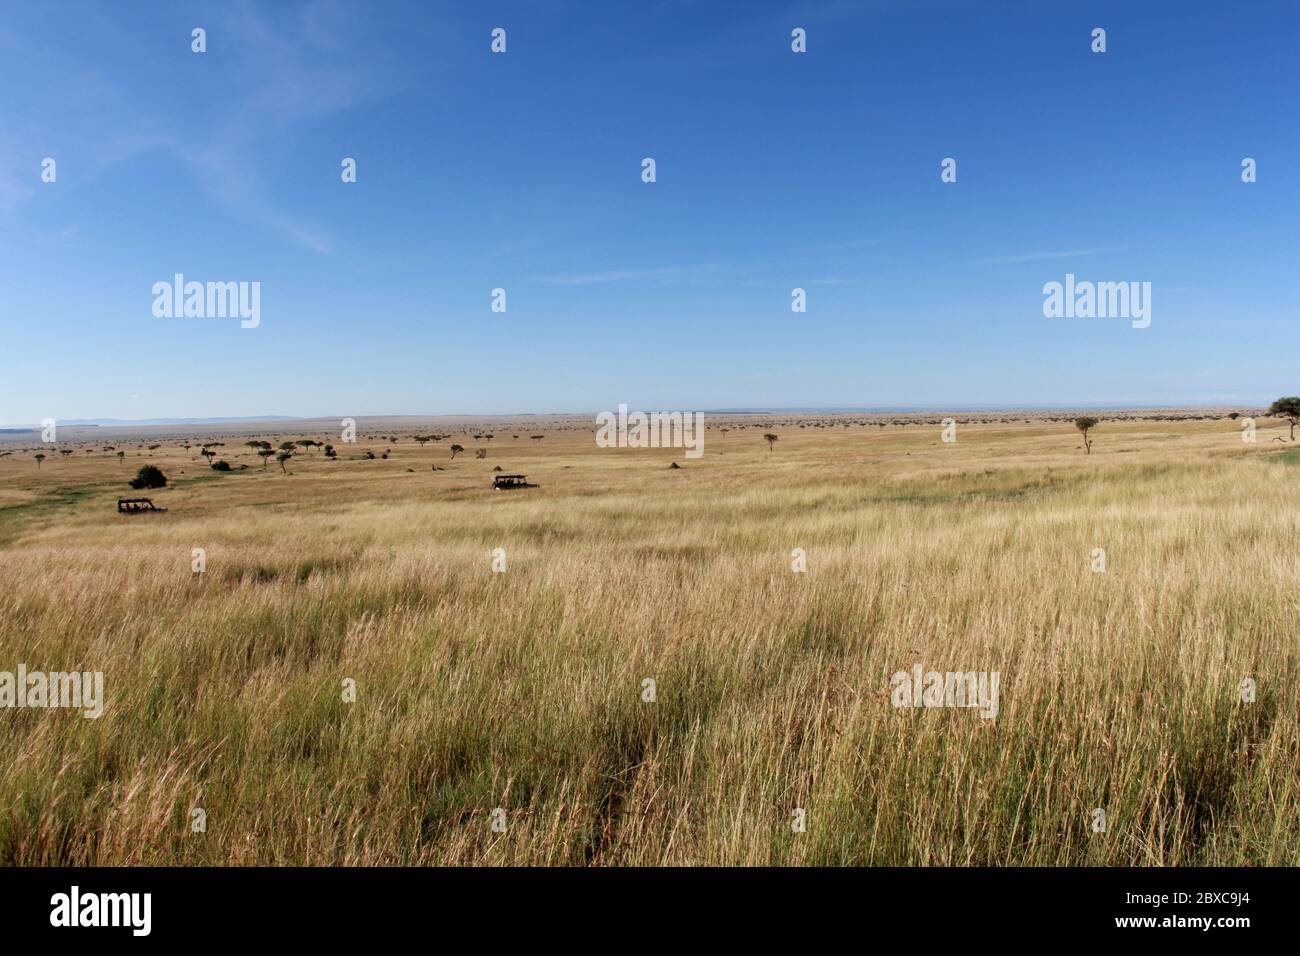 Paysage caractéristique et sans fin de la savane kenyane, le Mara Masai. De larges prairies avec des acacias dans la lumière dorée du soleil et du ciel bleu Banque D'Images